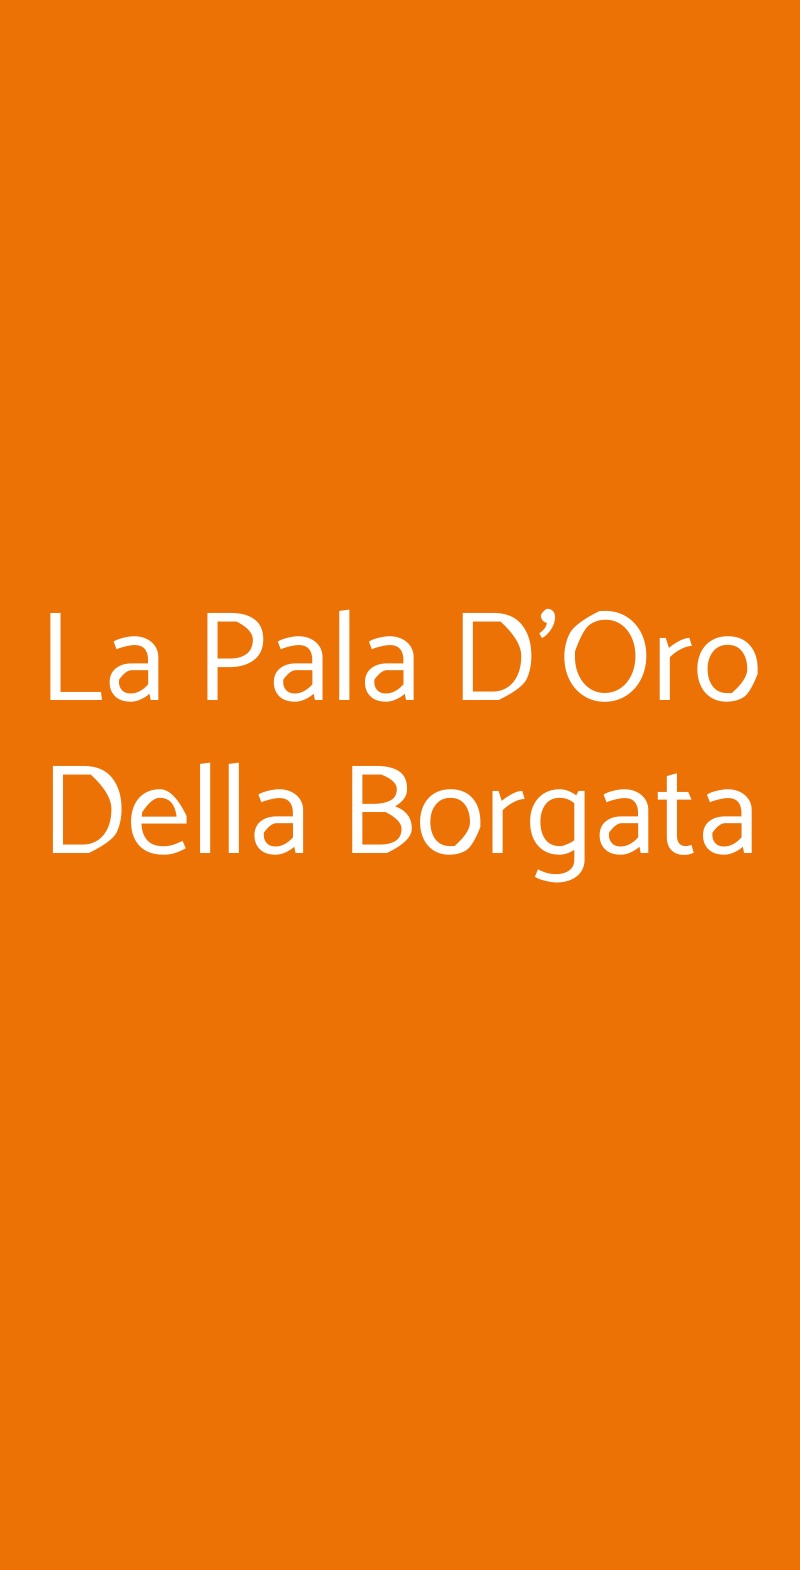 La Pala D'Oro Della Borgata Pontasserchio menù 1 pagina